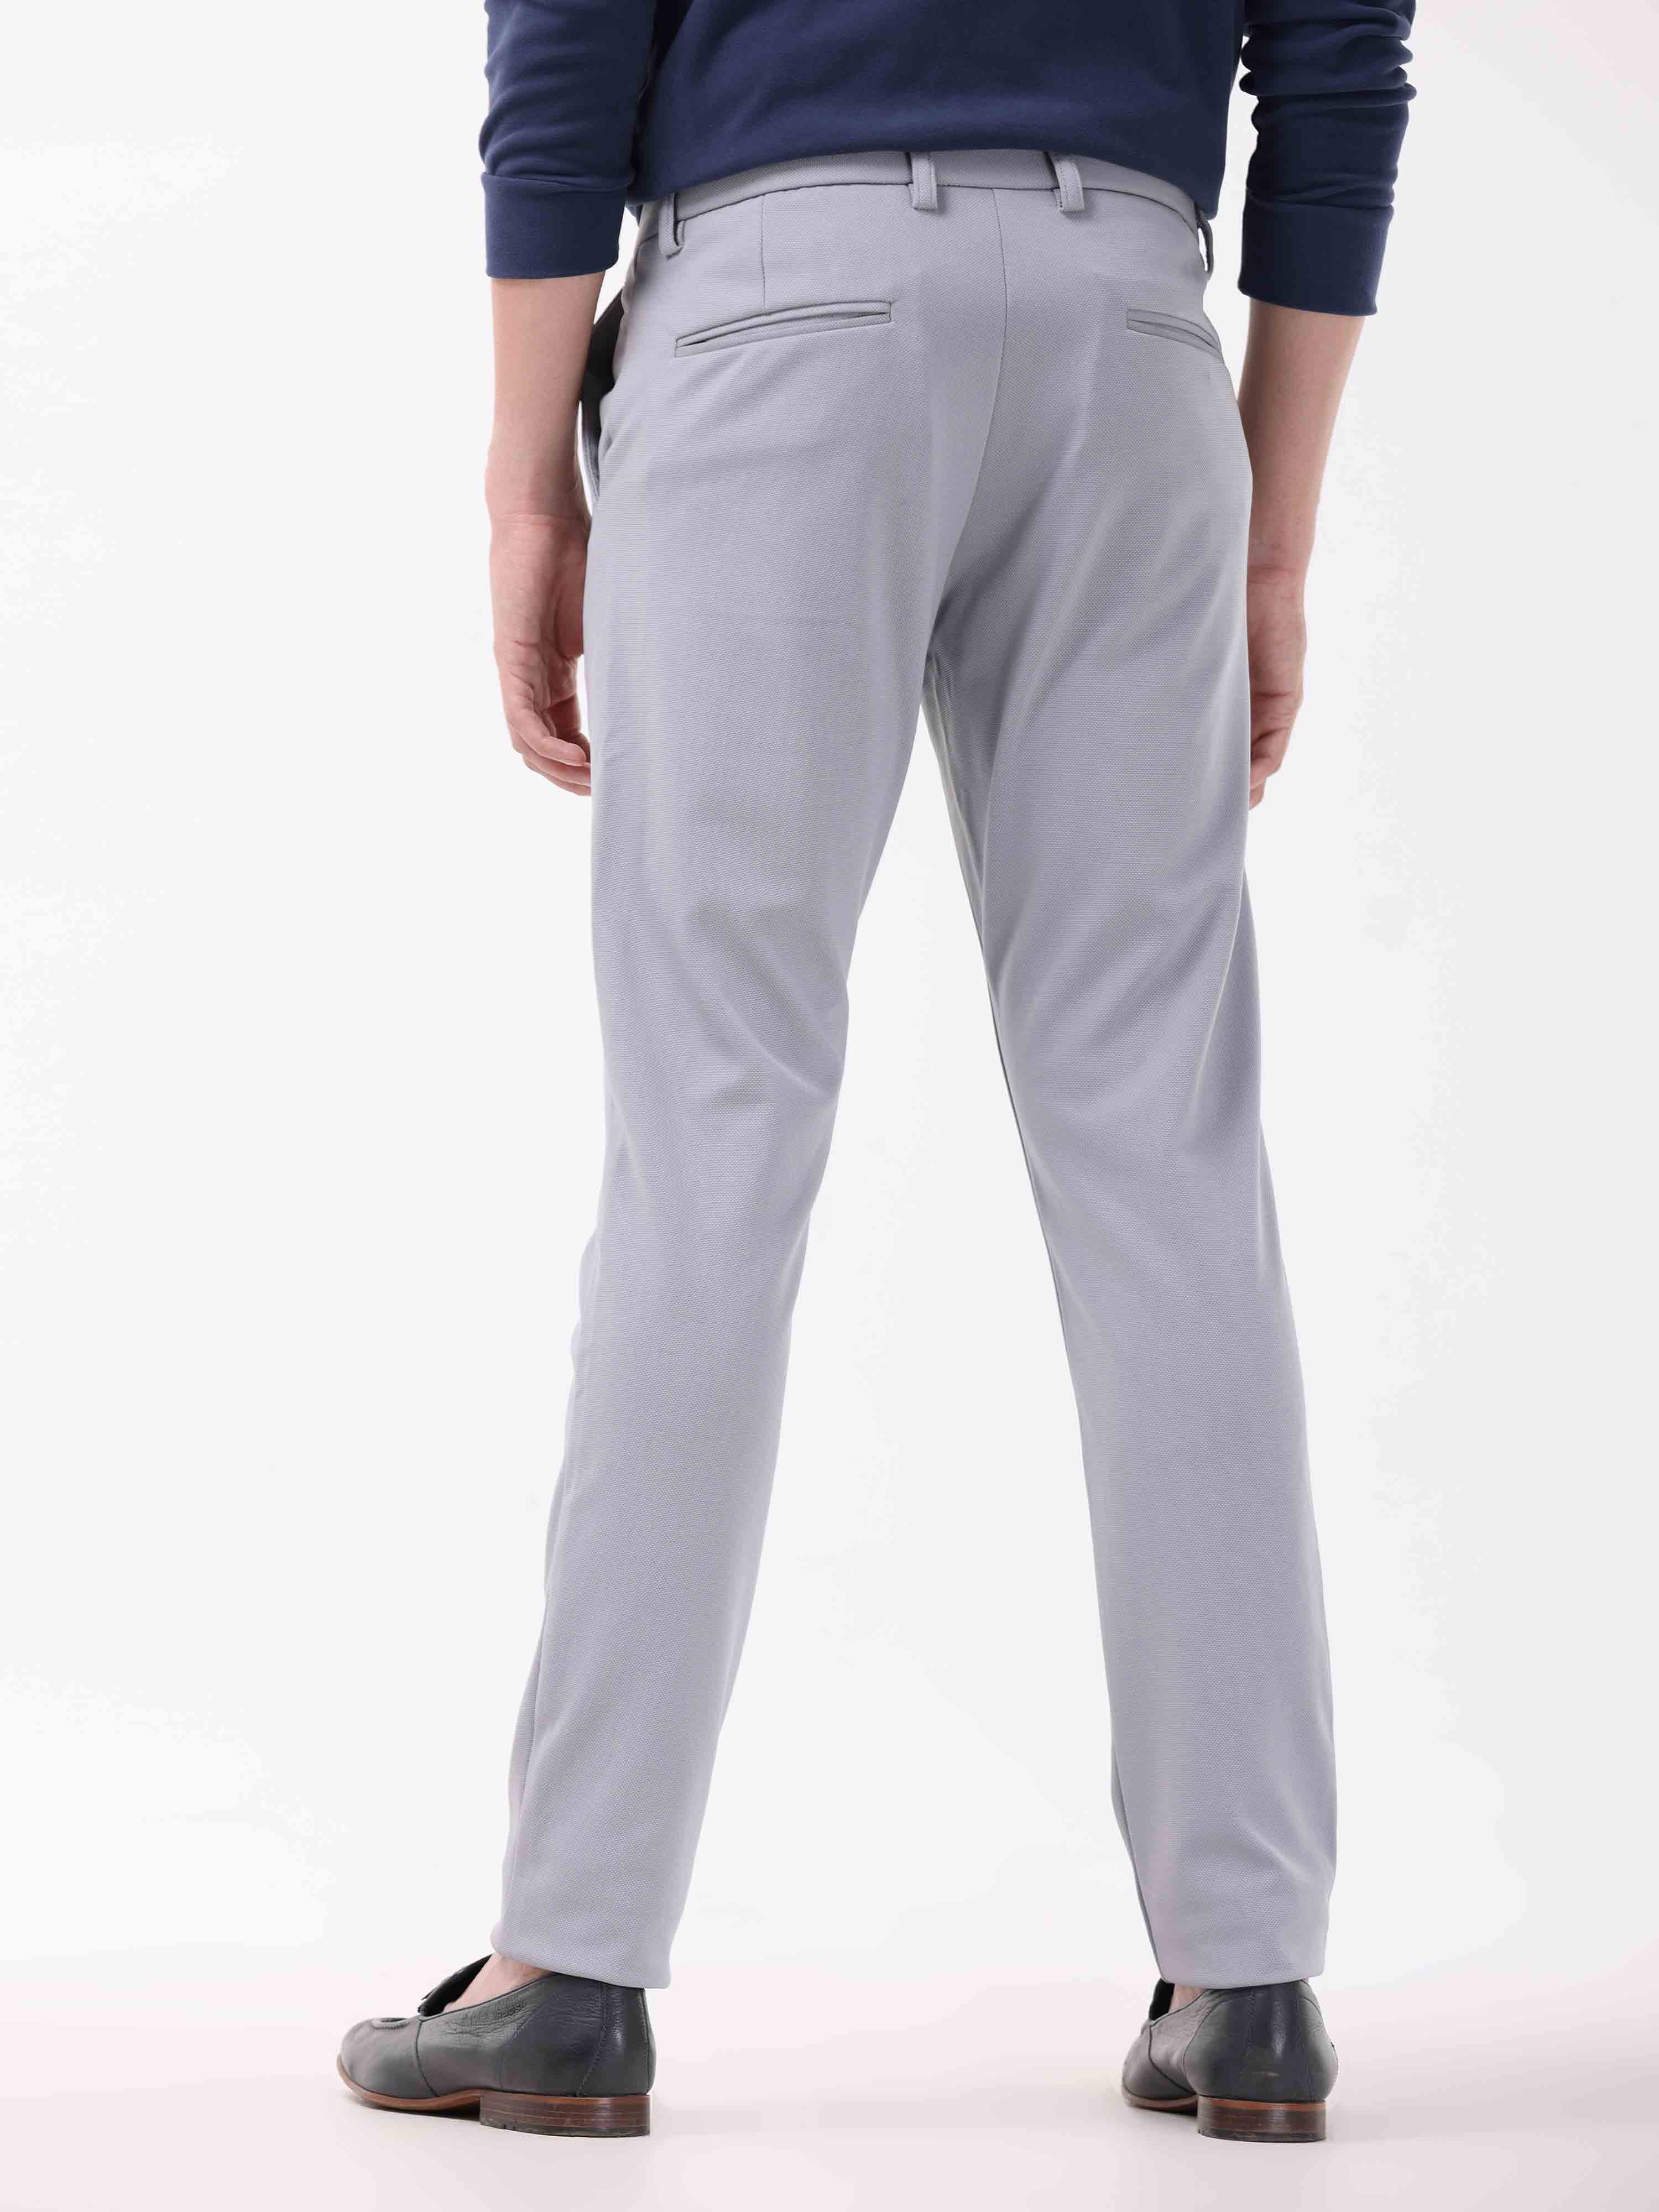 BadRhino Charcoal Grey Stretch Trousers | BadRhino